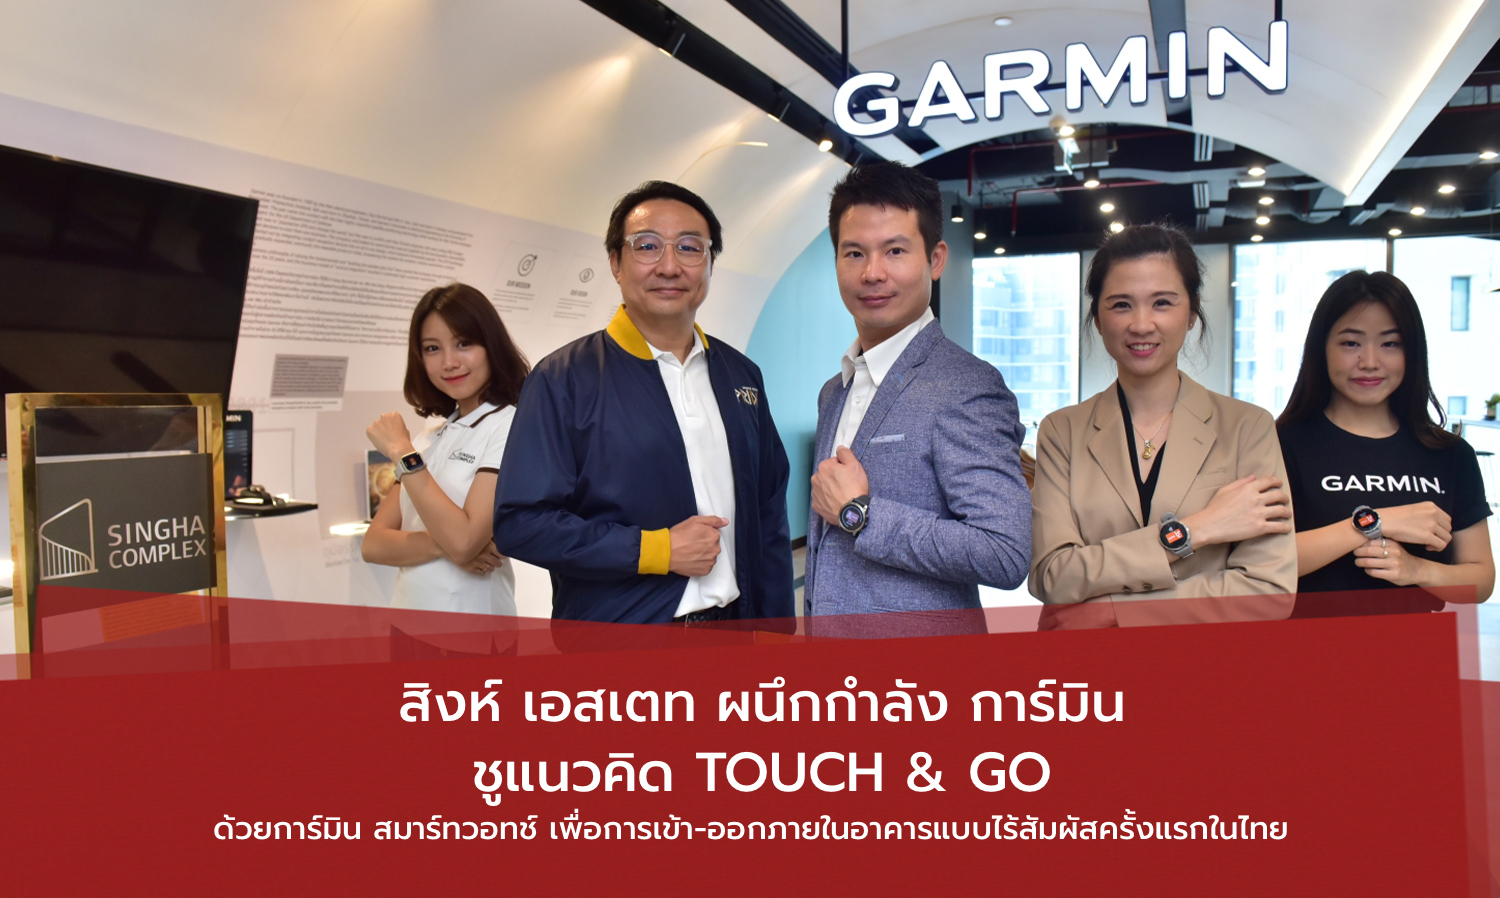 สิงห์-เอสเตท-ผนึกกำลัง-การ์มิน-ชูแนวคิด-touch-go-ด้วยการ์มิน-สมาร์ทวอทช์-เพื่อการเข้า-ออกภายในอาคารแบบไร้สัมผัสครั้งแรกในไทย-